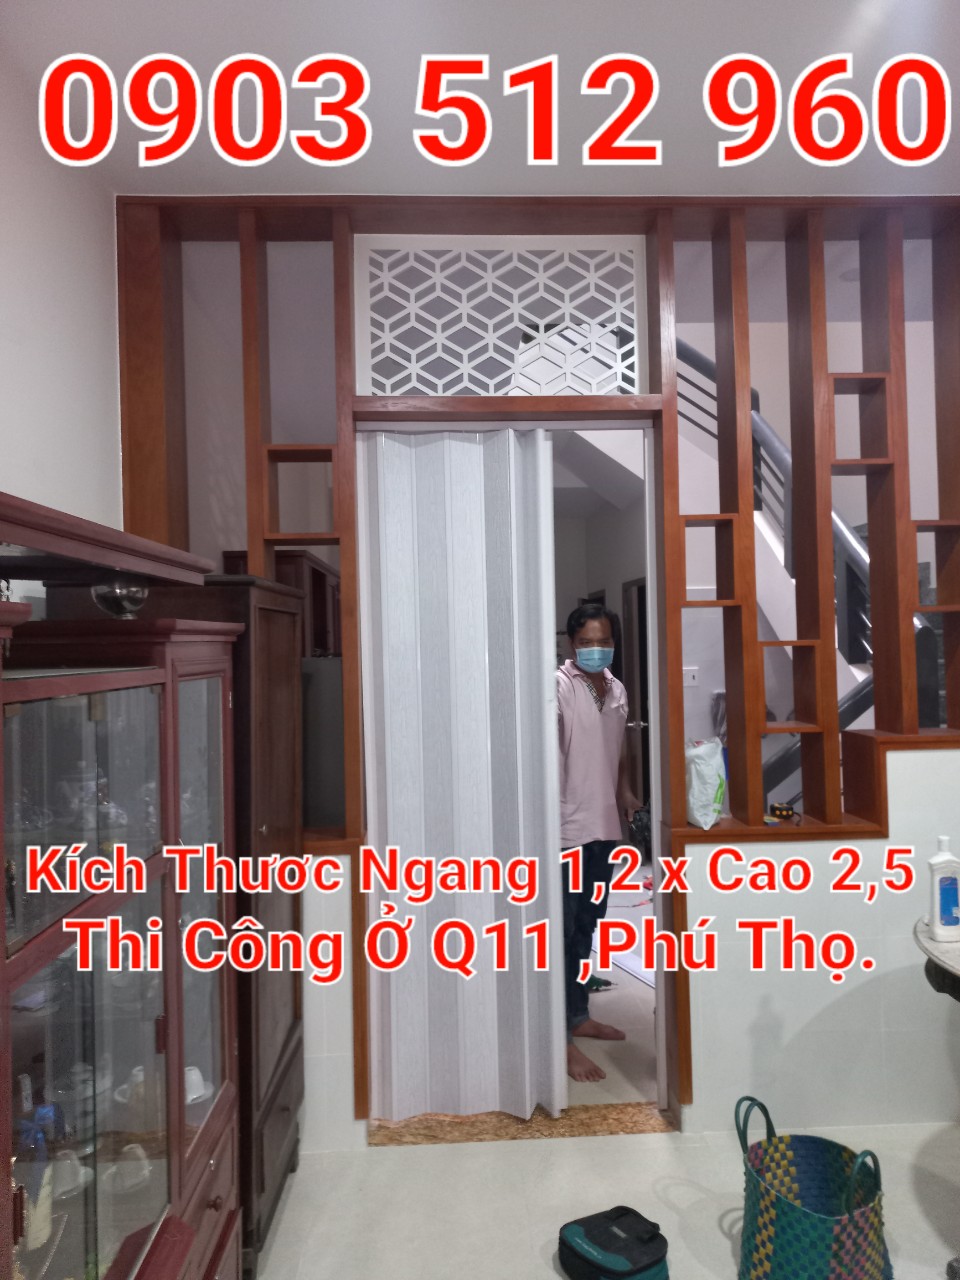 7 Cửa nhựa xếp toilet cao cấp,Loại Tốt Tại TPHCM Mua Ở Đâu-Cửa Xếp nhựa Đài Loan HCM ,Bán Ở Đâu GiáTốt